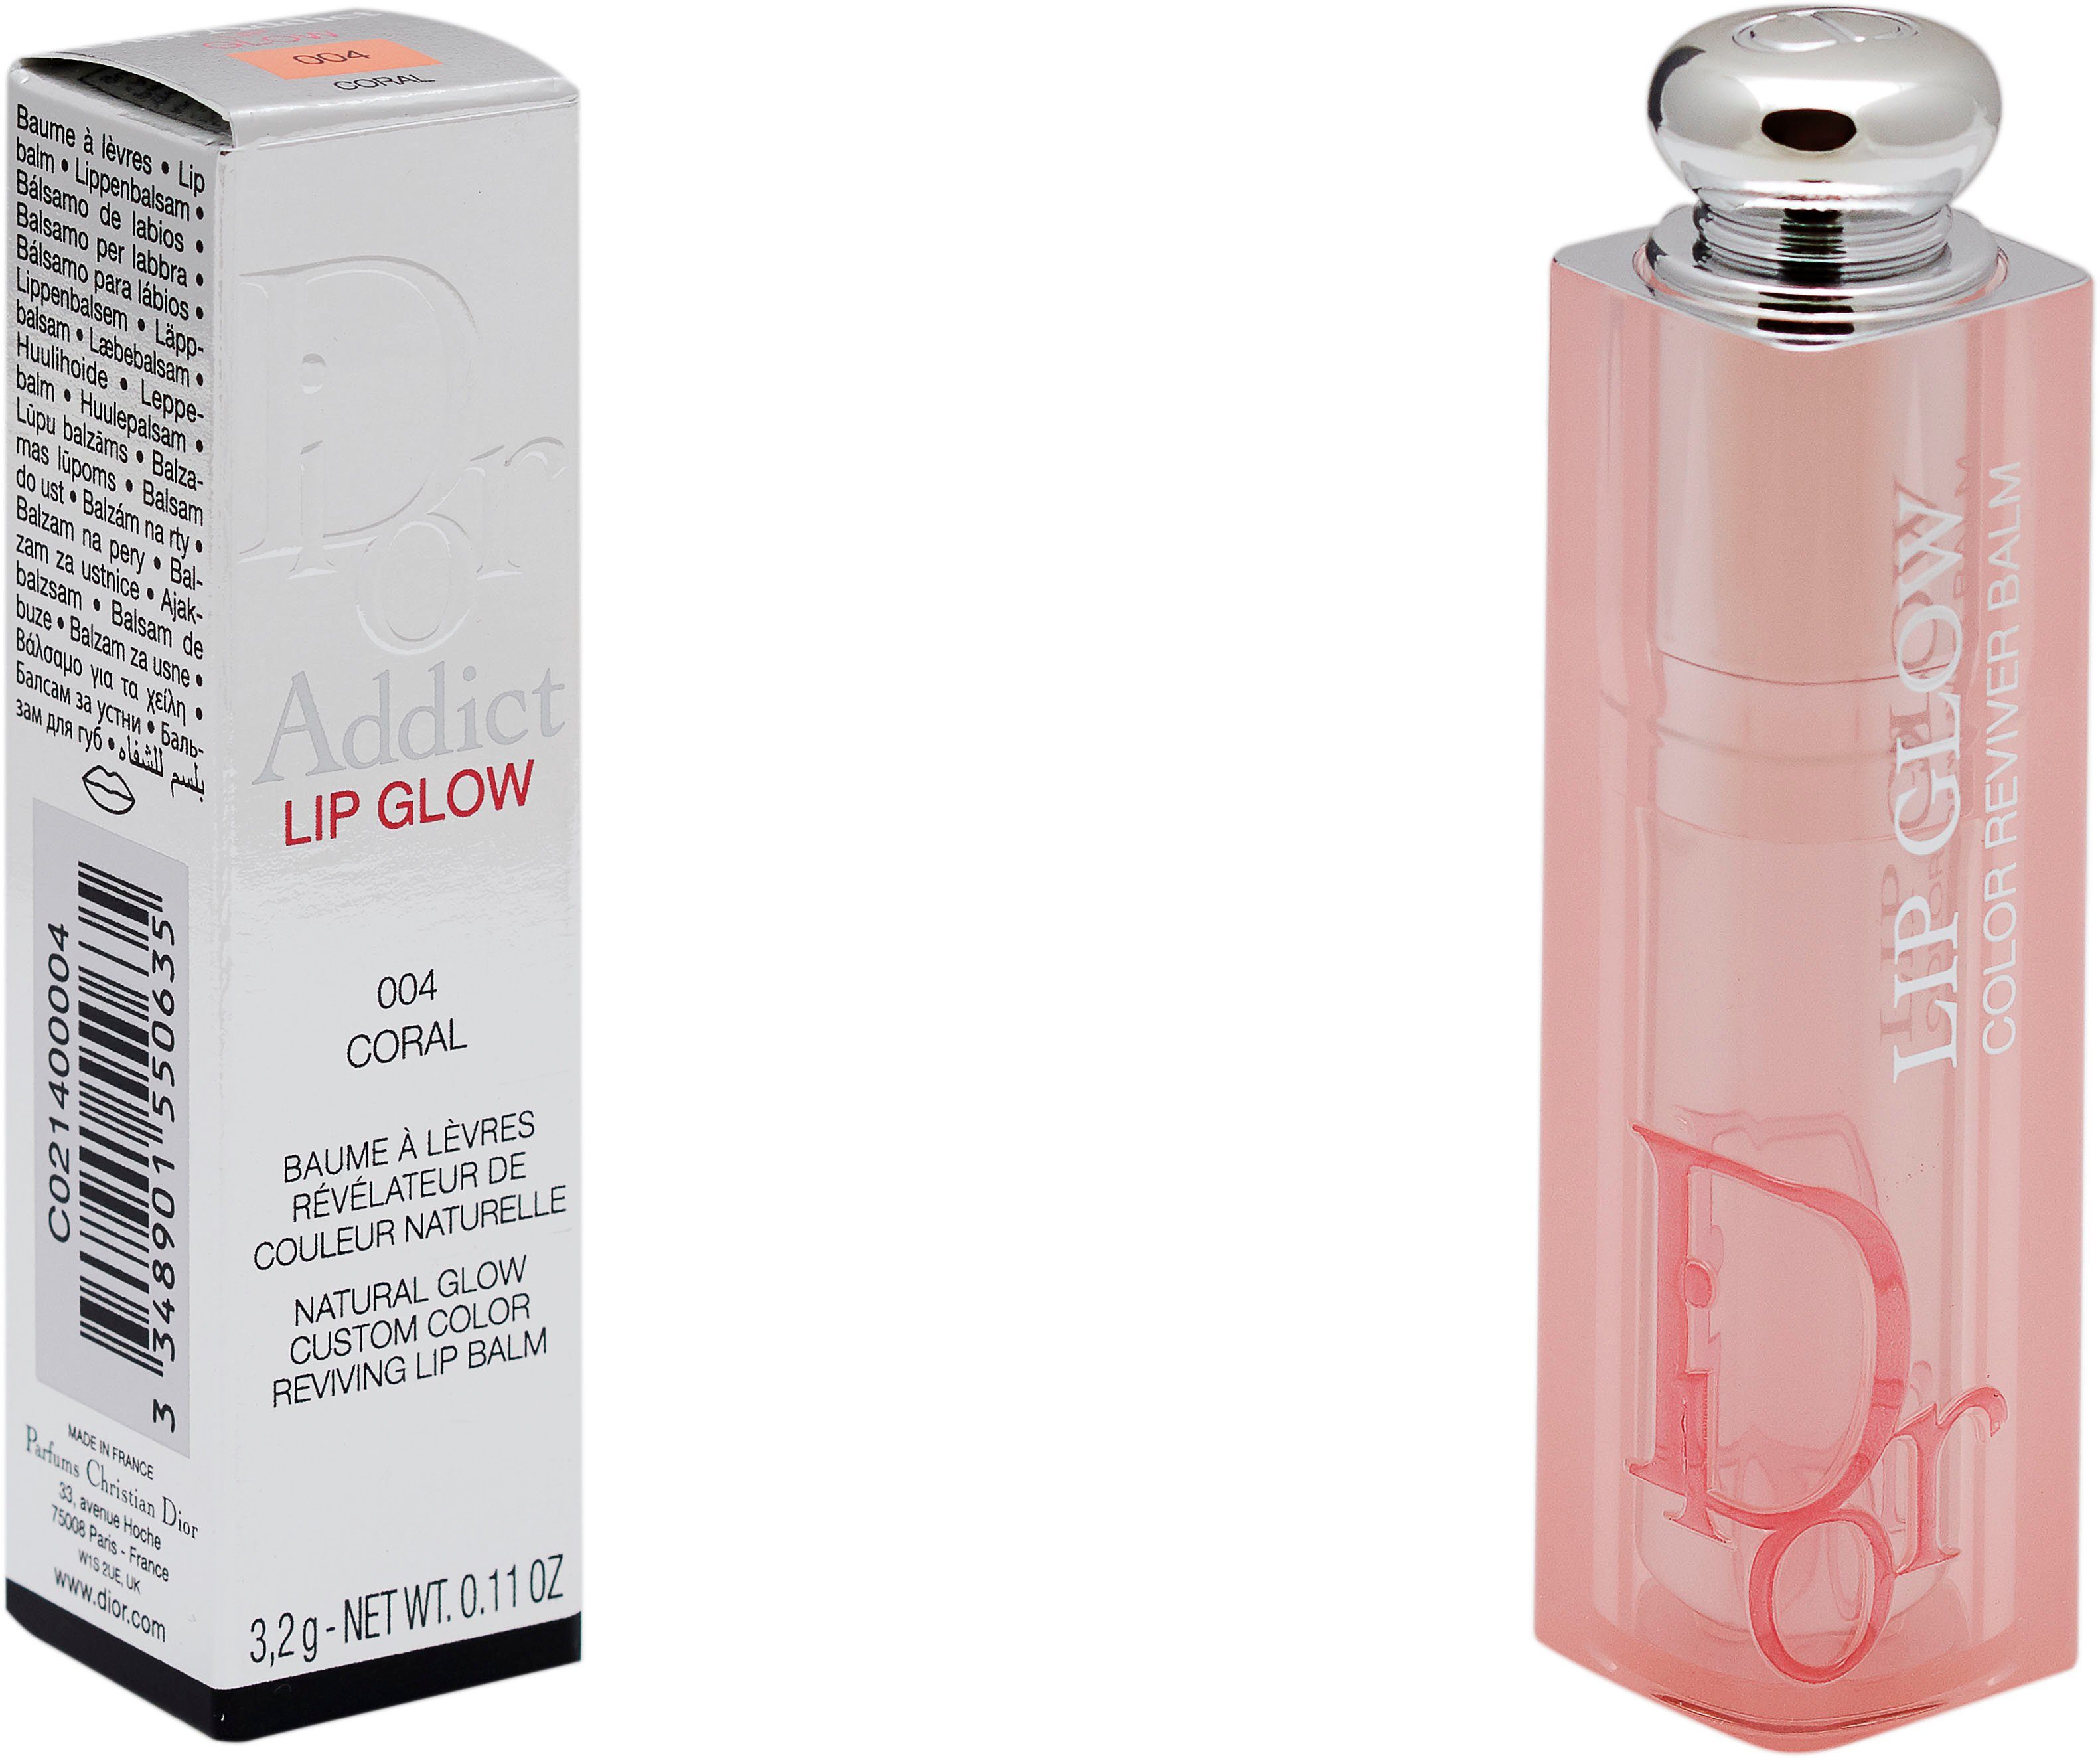 Coral 004 Lippenbalsam Dior Glow Dior Addict Lip